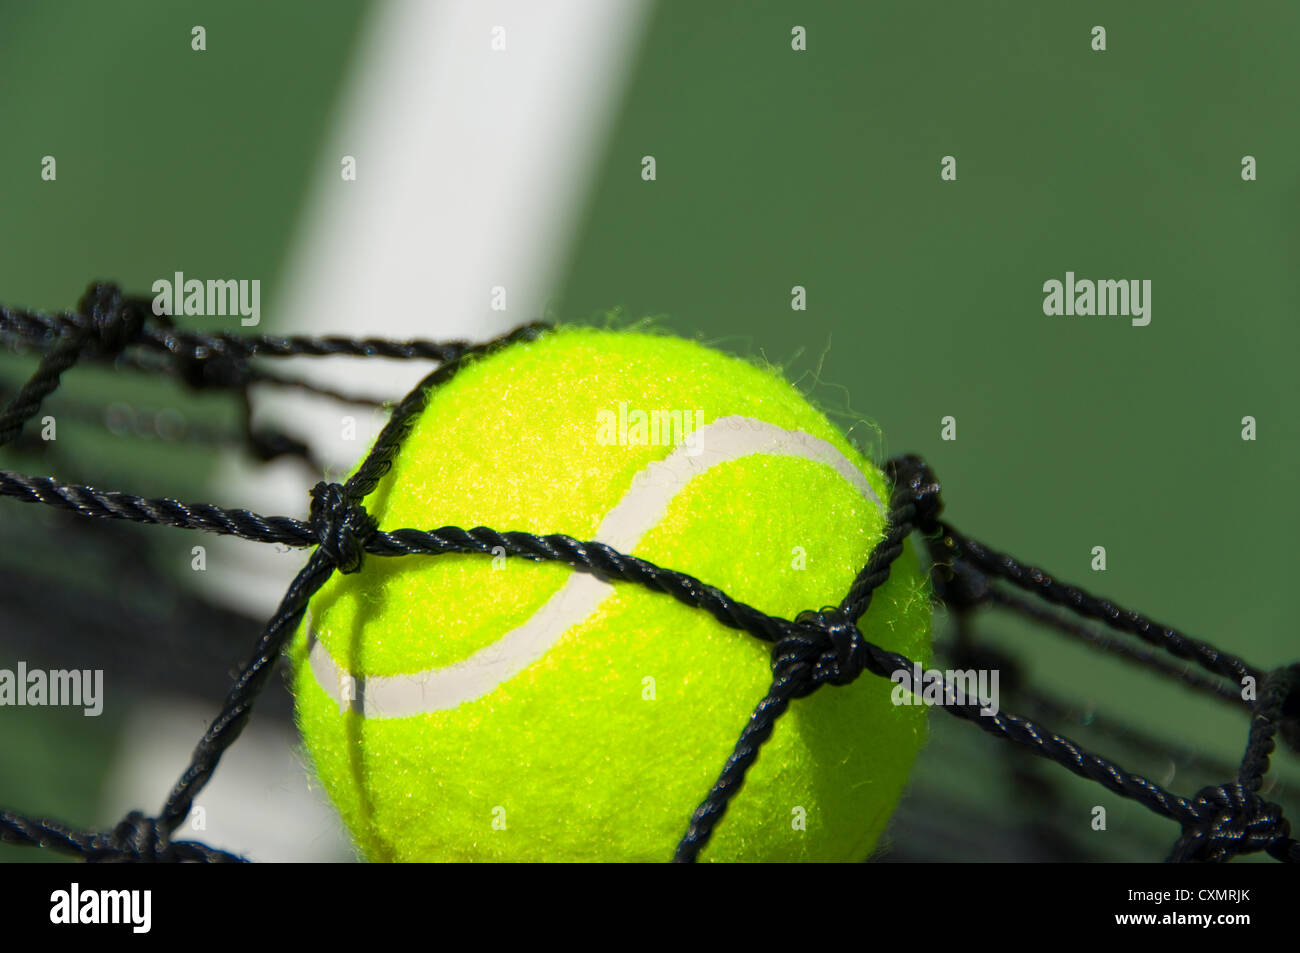 Jaune verdâtre brillant, balle de tennis sur ciment fraîchement peint Banque D'Images